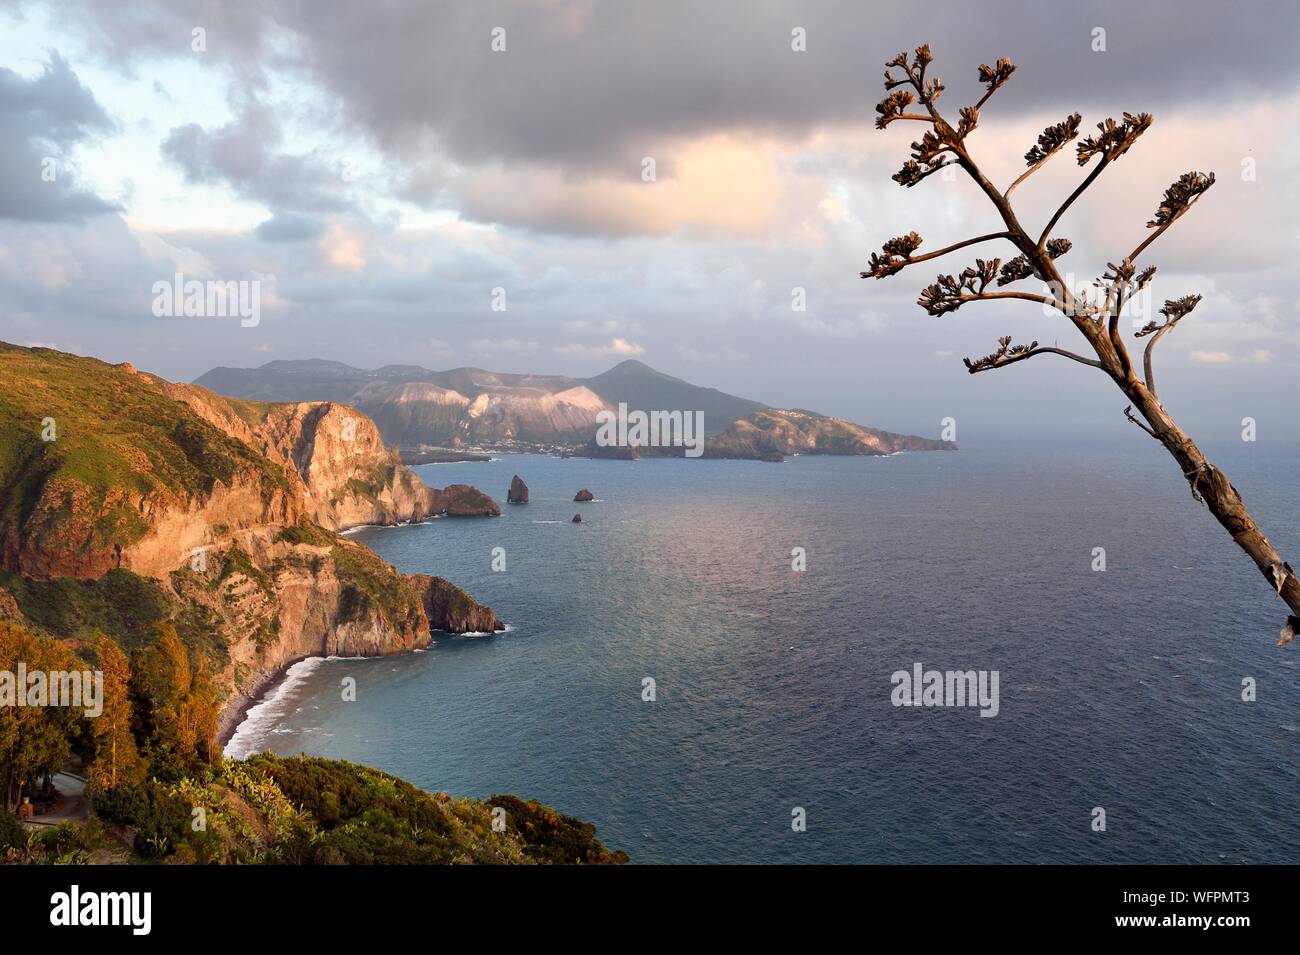 Italien, Sizilien, Liparische Inseln, ein UNESCO Weltkulturerbe, Insel Lipari, die Klippen von der Südwestküste der Insel an Quattrocchi mit Blick auf den Vulkan Insel im Hintergrund Stockfoto